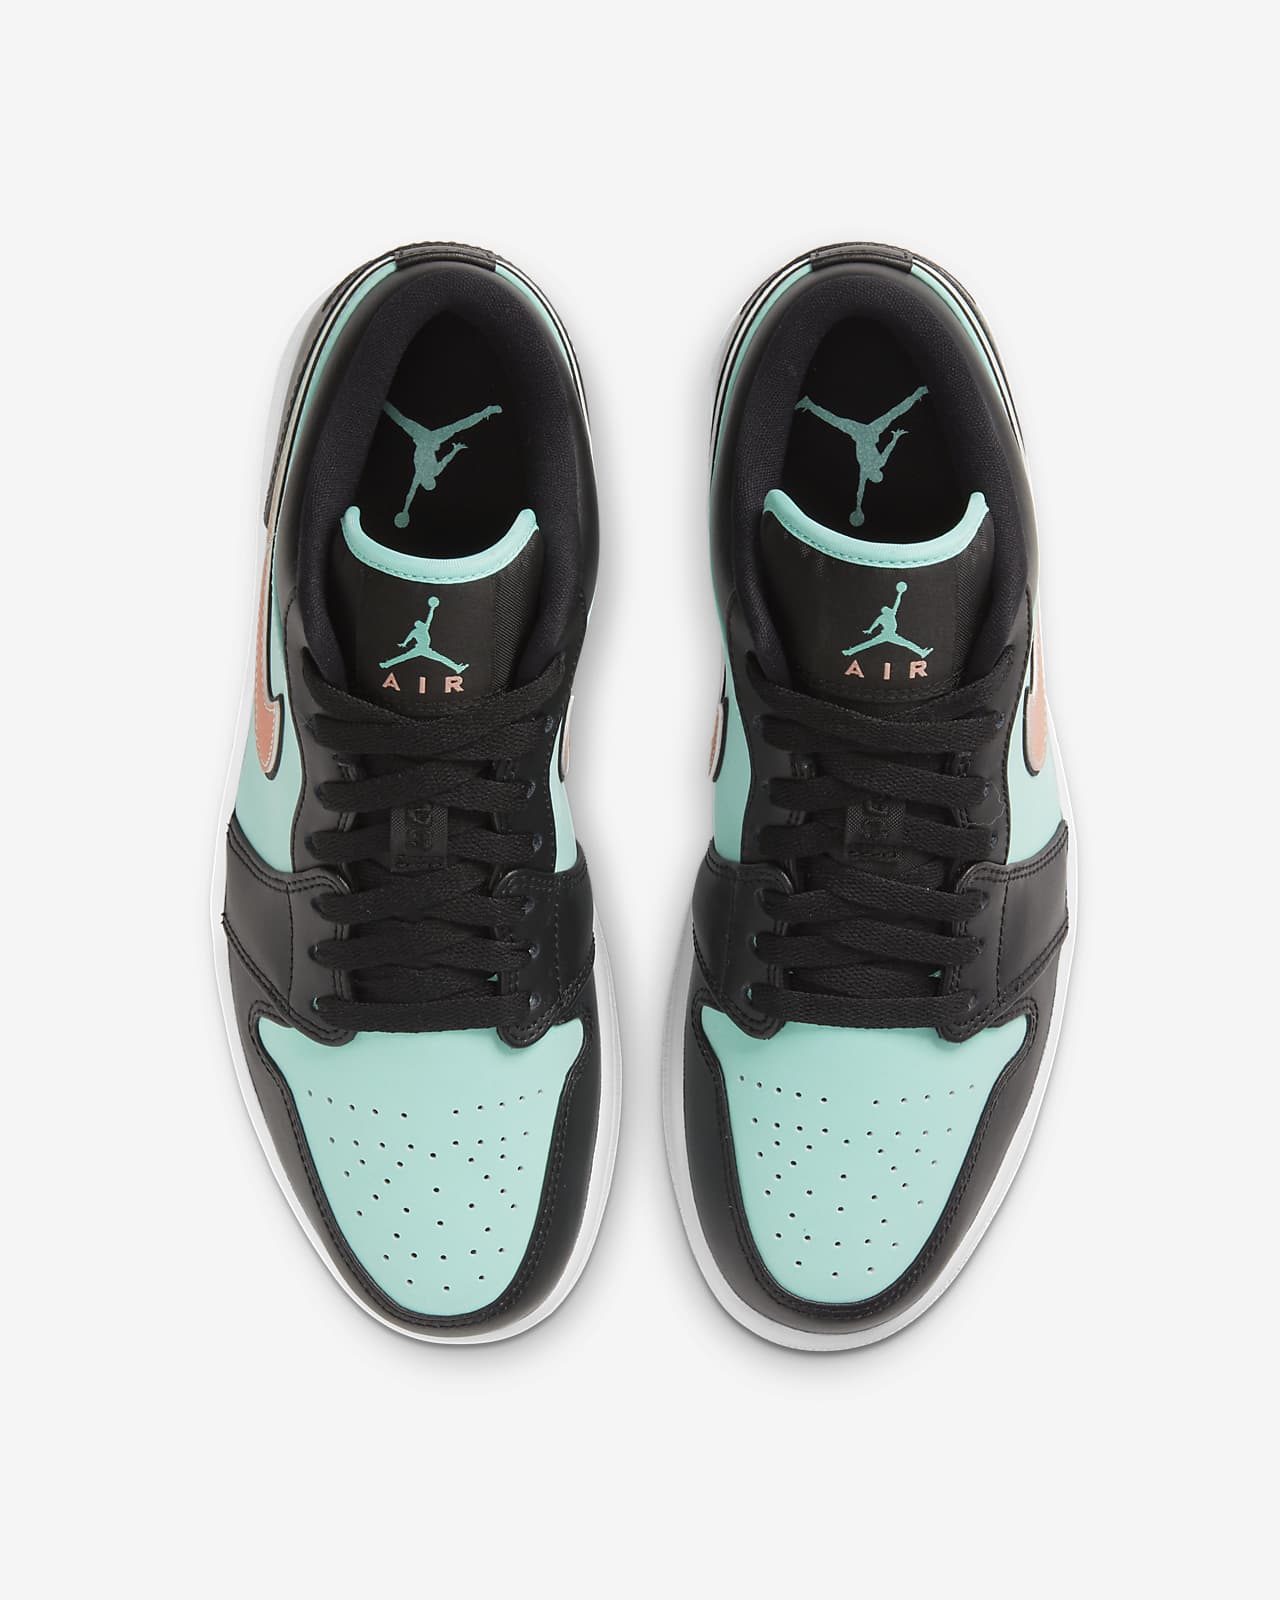 Air Jordan 1 Low Se Shoe Nike In